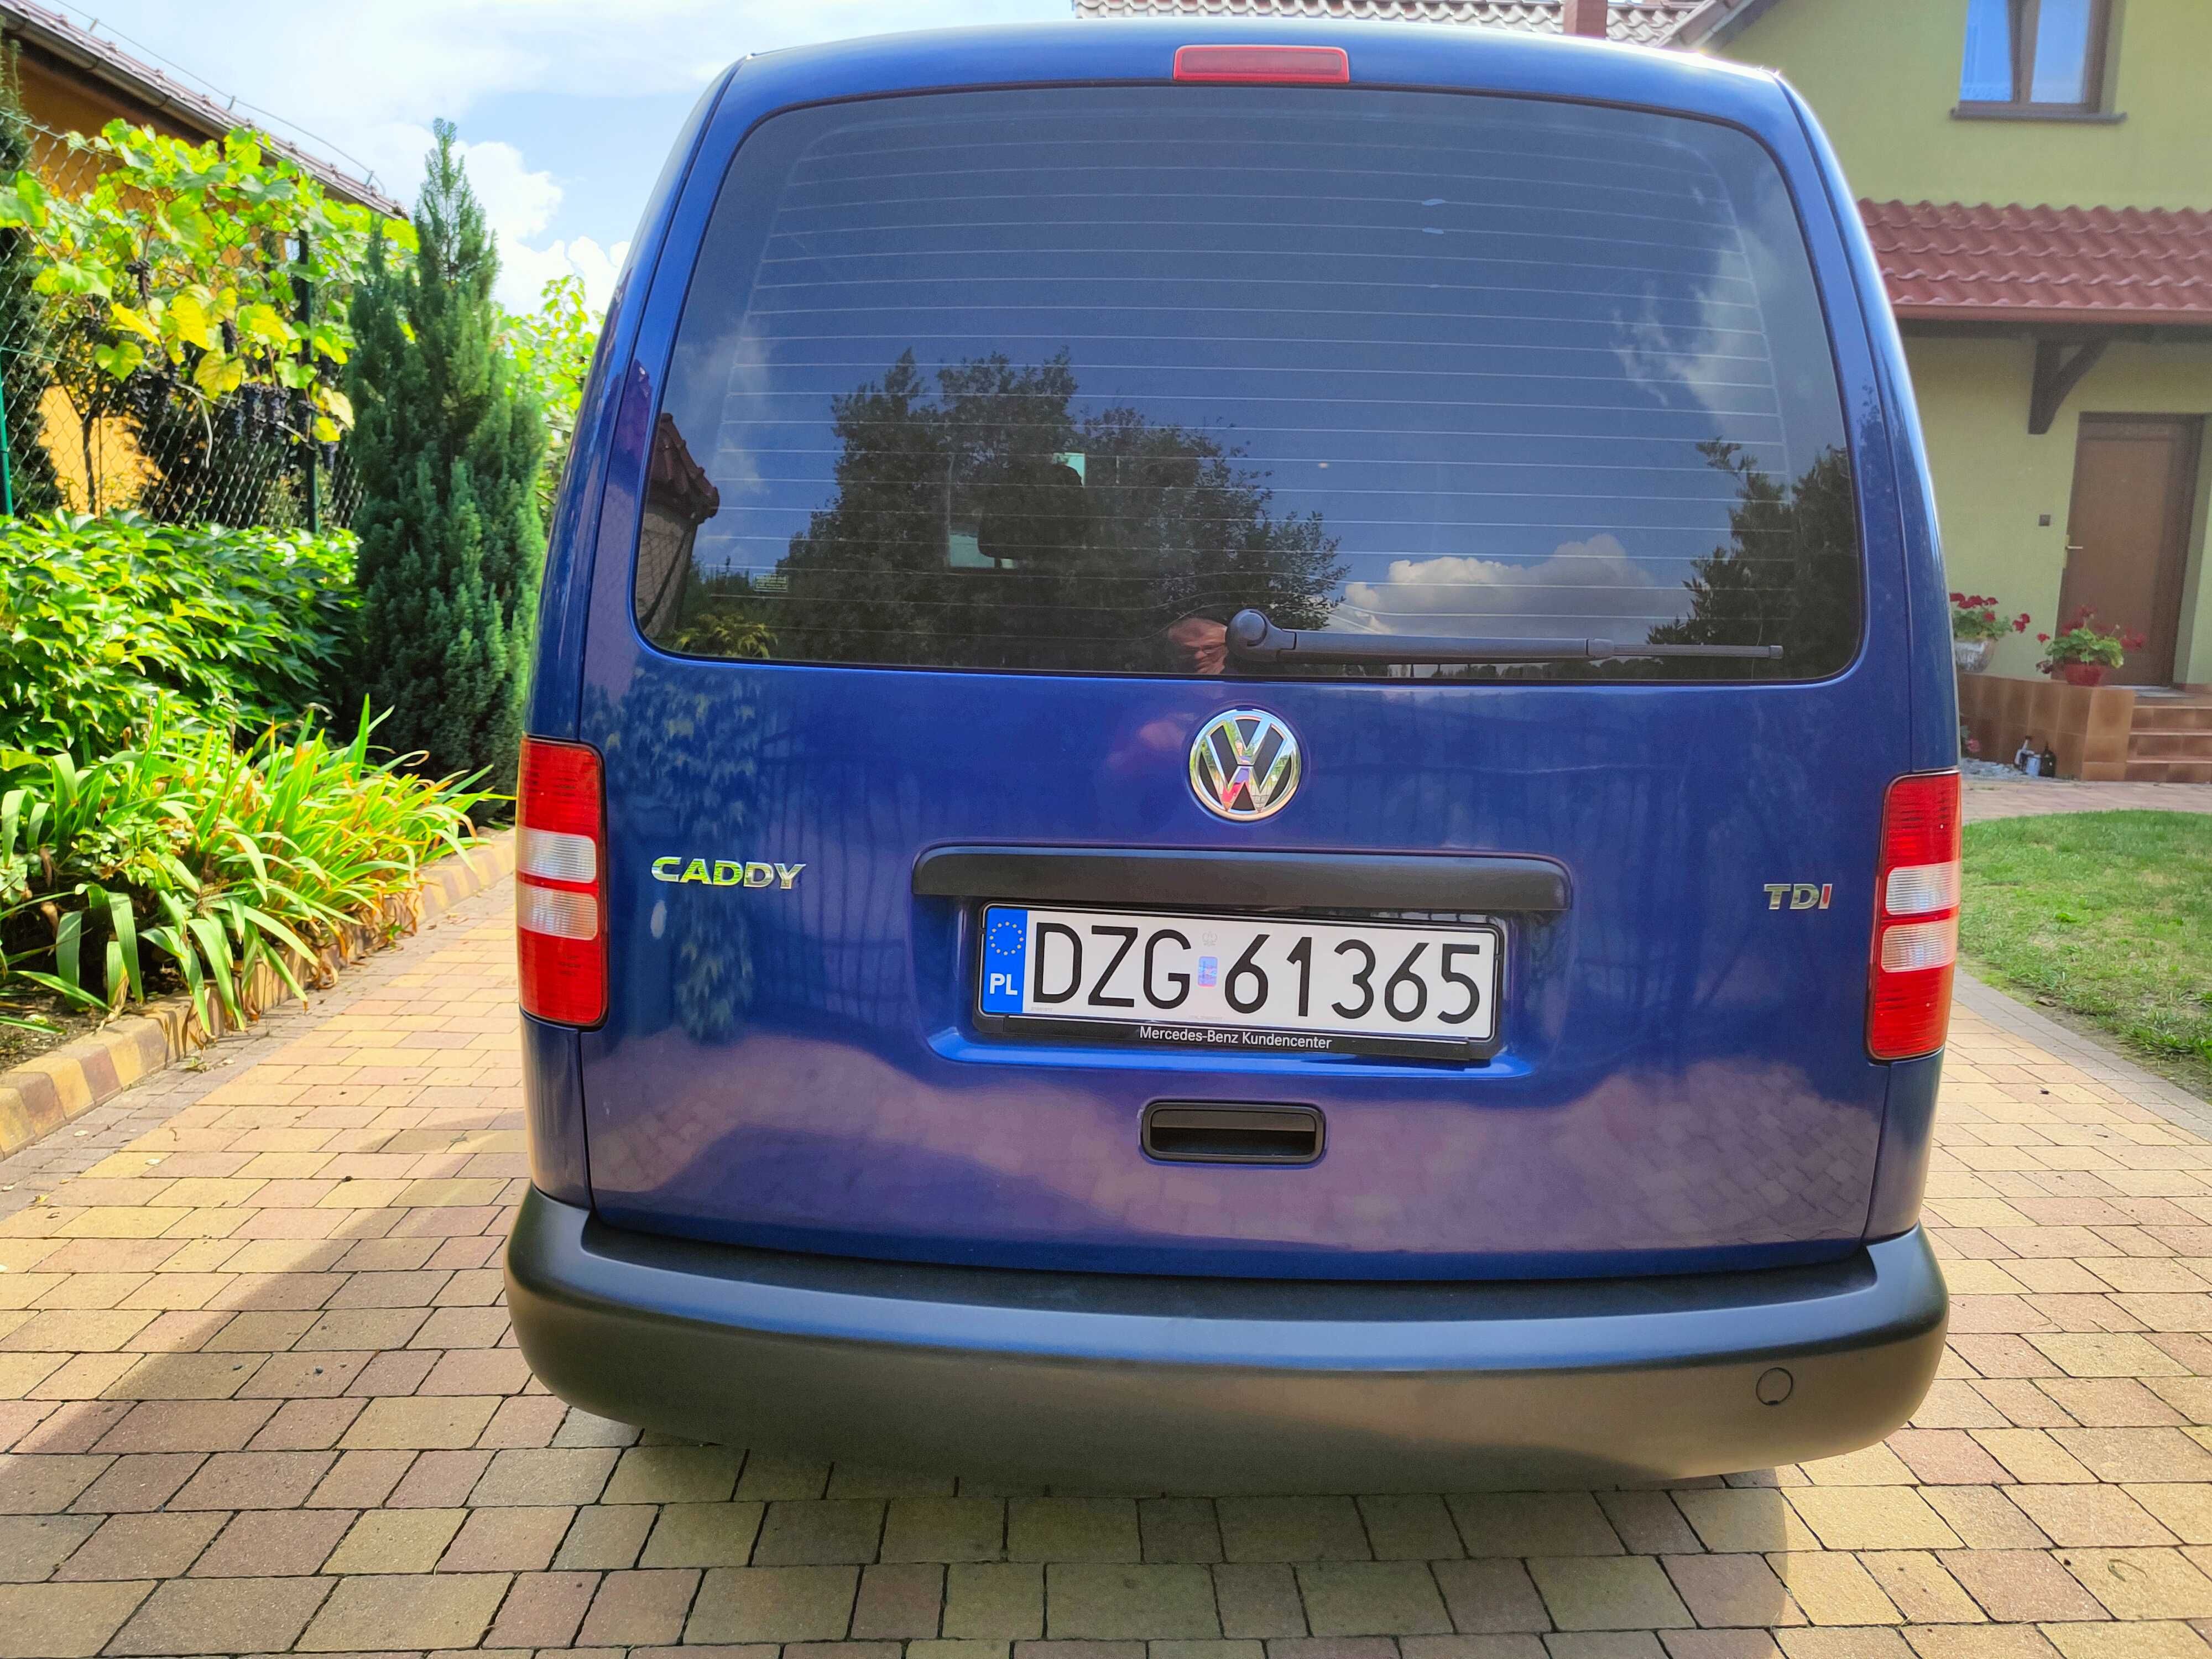 Sprzedam Volkswagena Caddy rok 2013 poj. 1600 cena 29500 zł